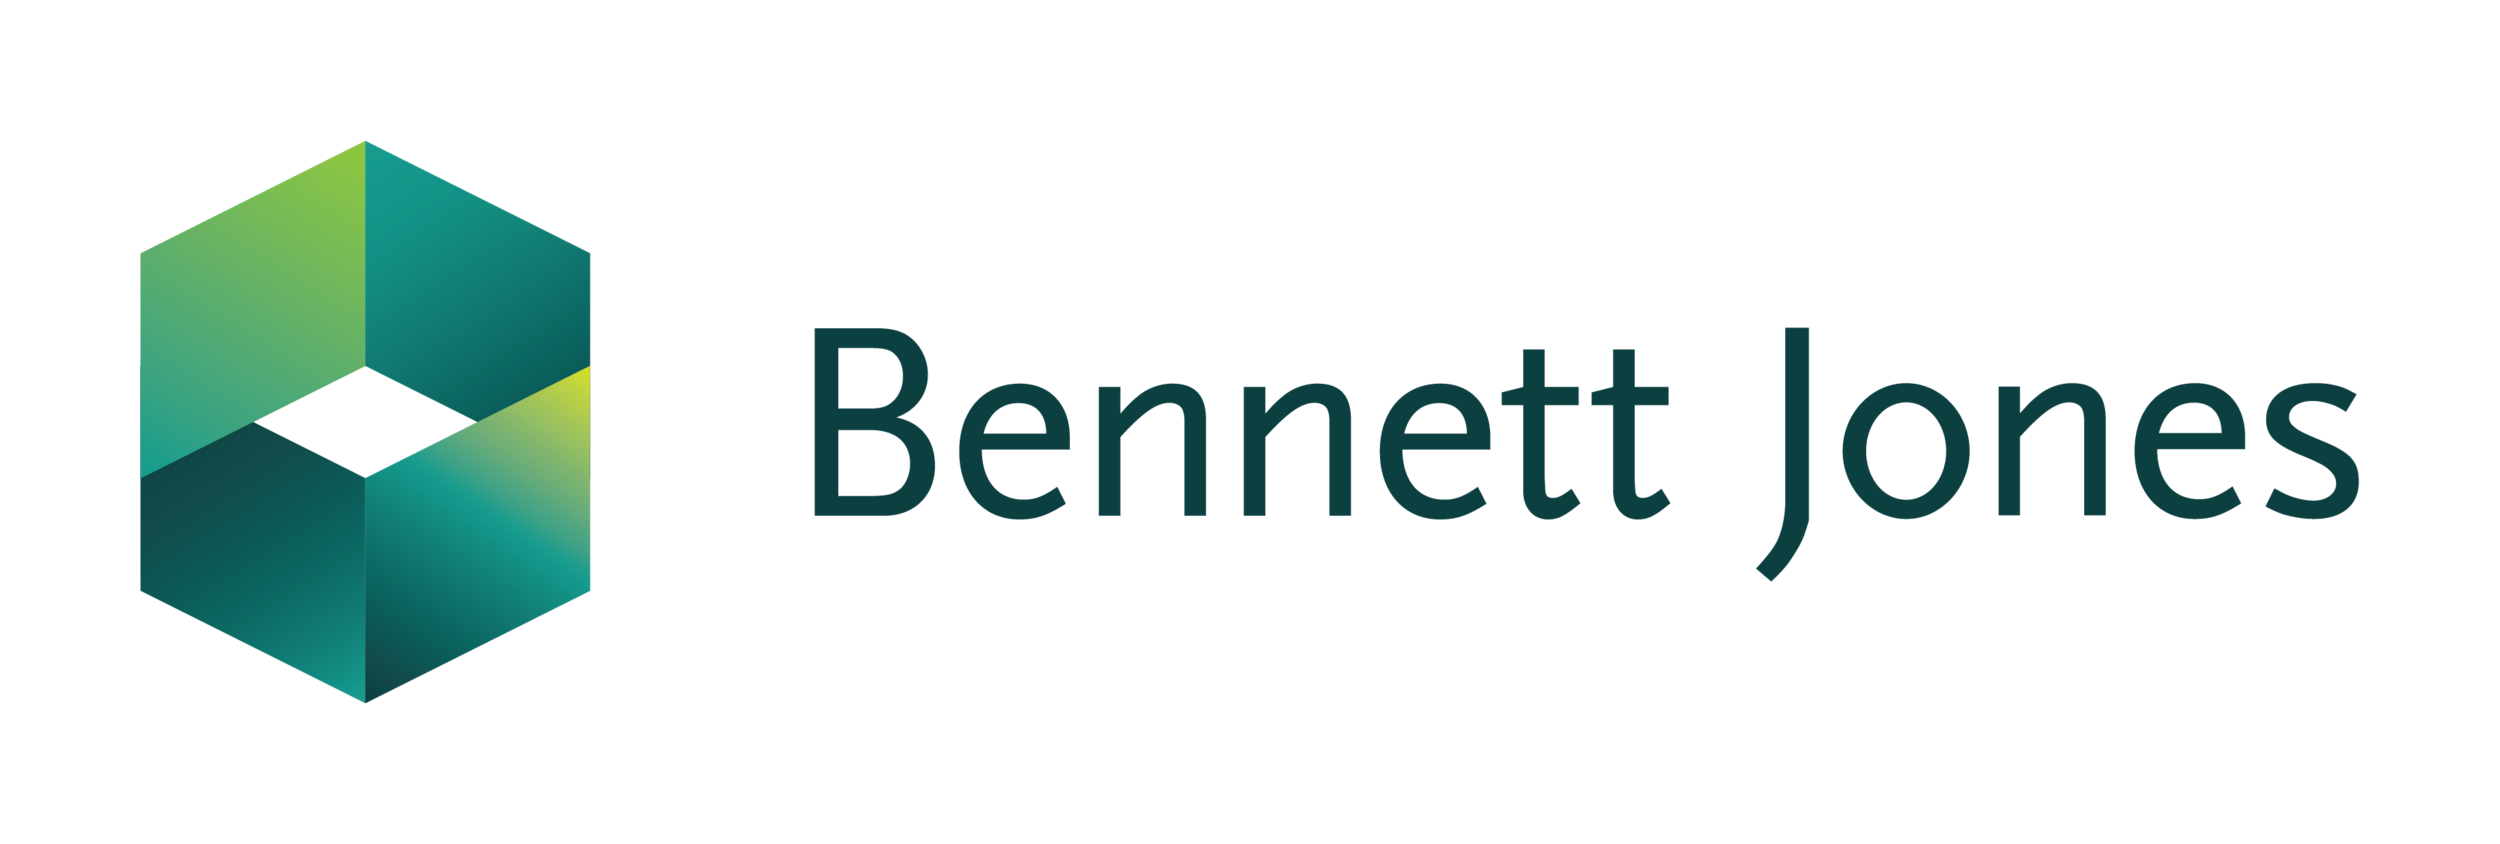 Bennett Jones Logo.png